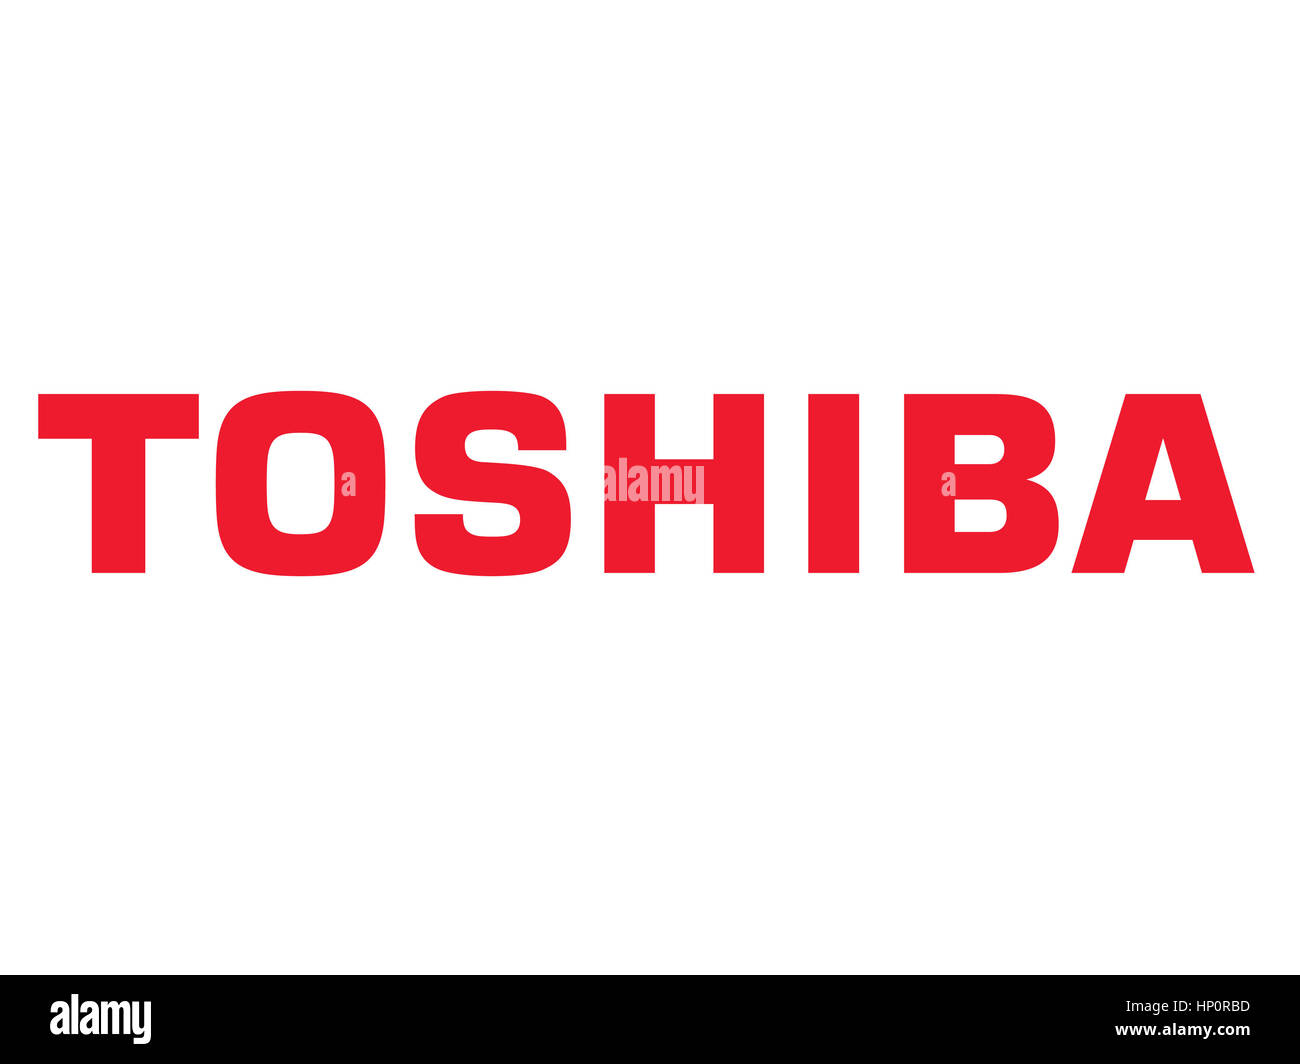 Toshiba Banque d'images détourées - Alamy